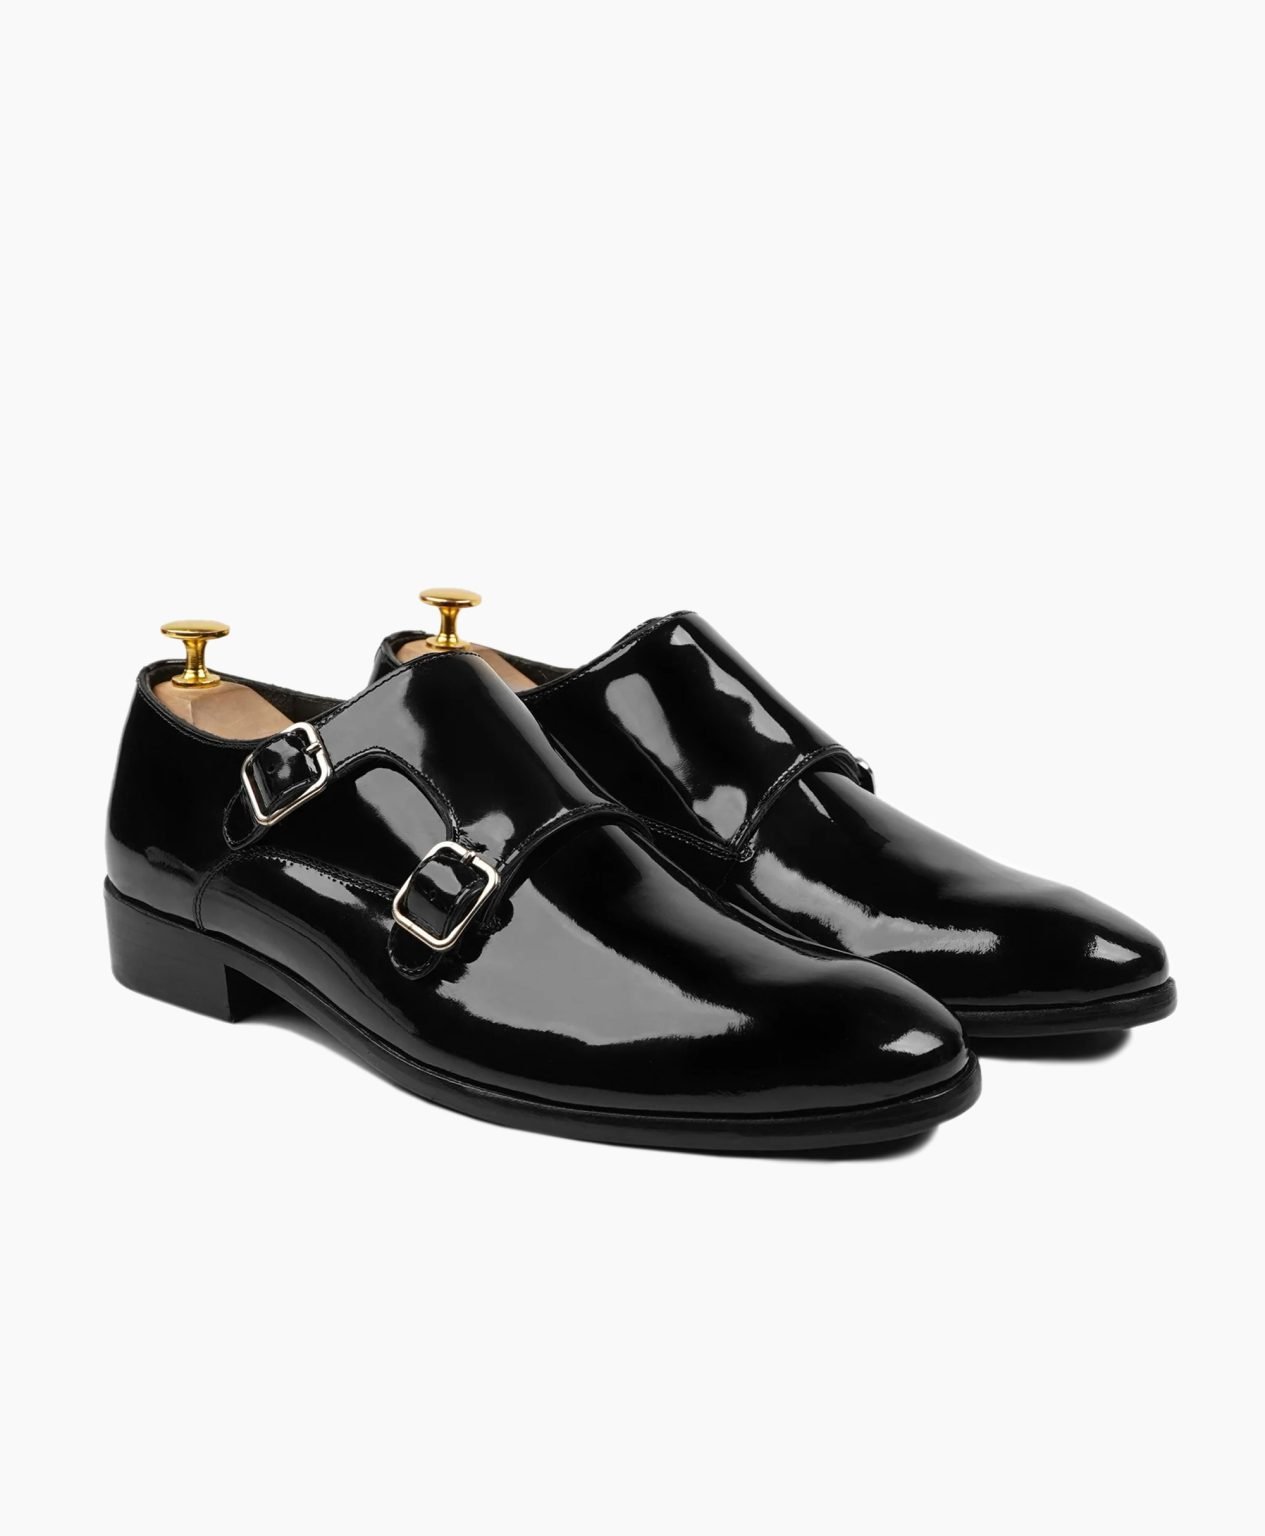 torridge-double-monkstrap-black-leather-shoes-image200